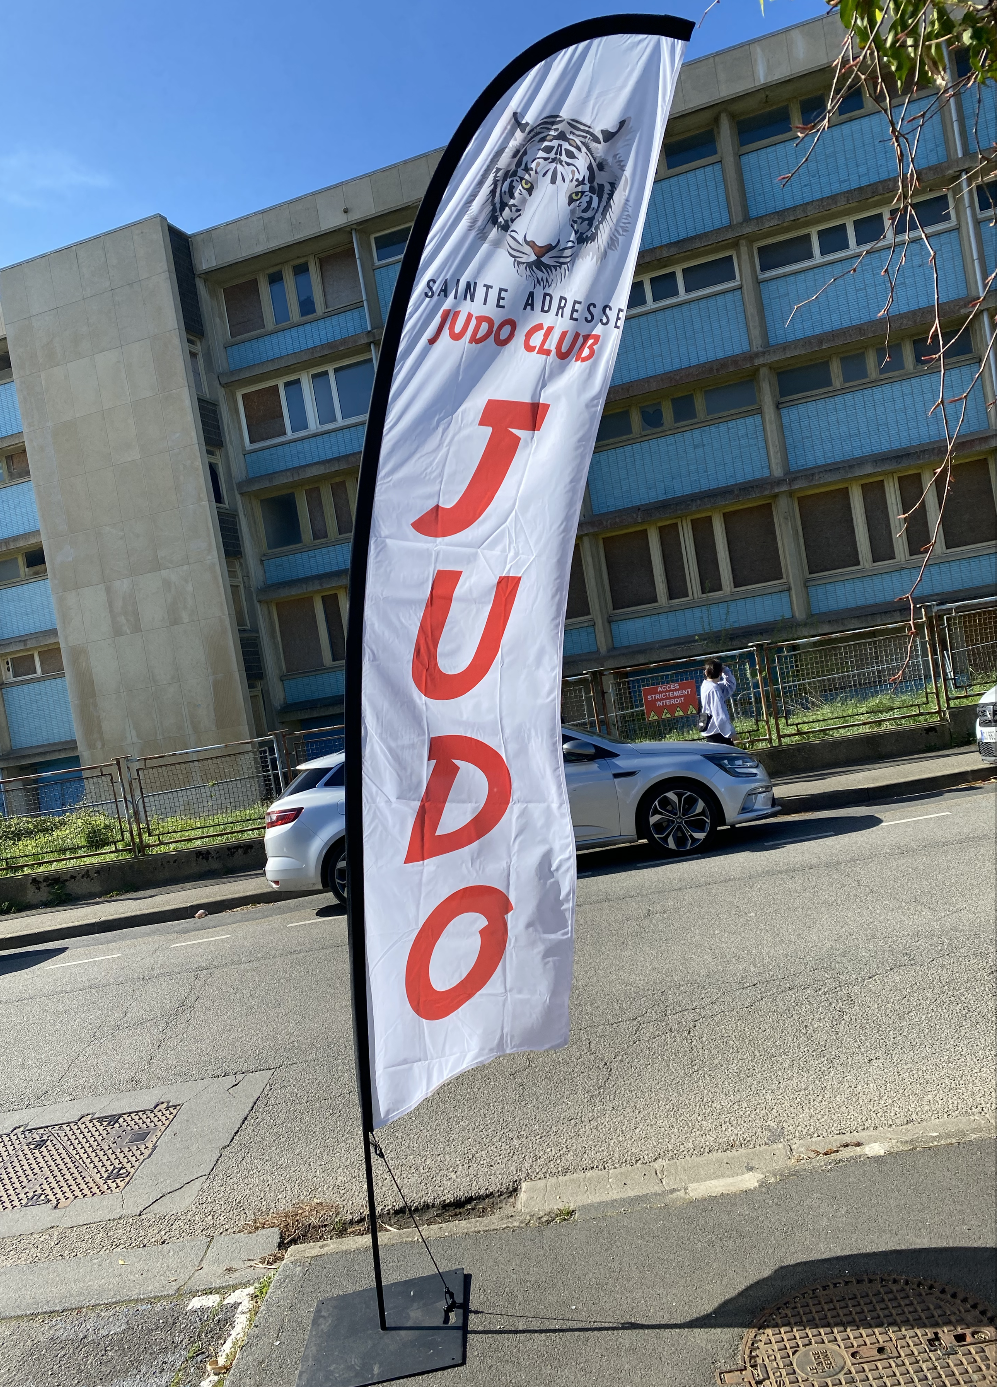 Drapeau judo avec le logo personnalisé pour le Club de Sainte Adresse en Normandie. Le drapeau a une voile blanche il mesure 3m et une écriture rouge 